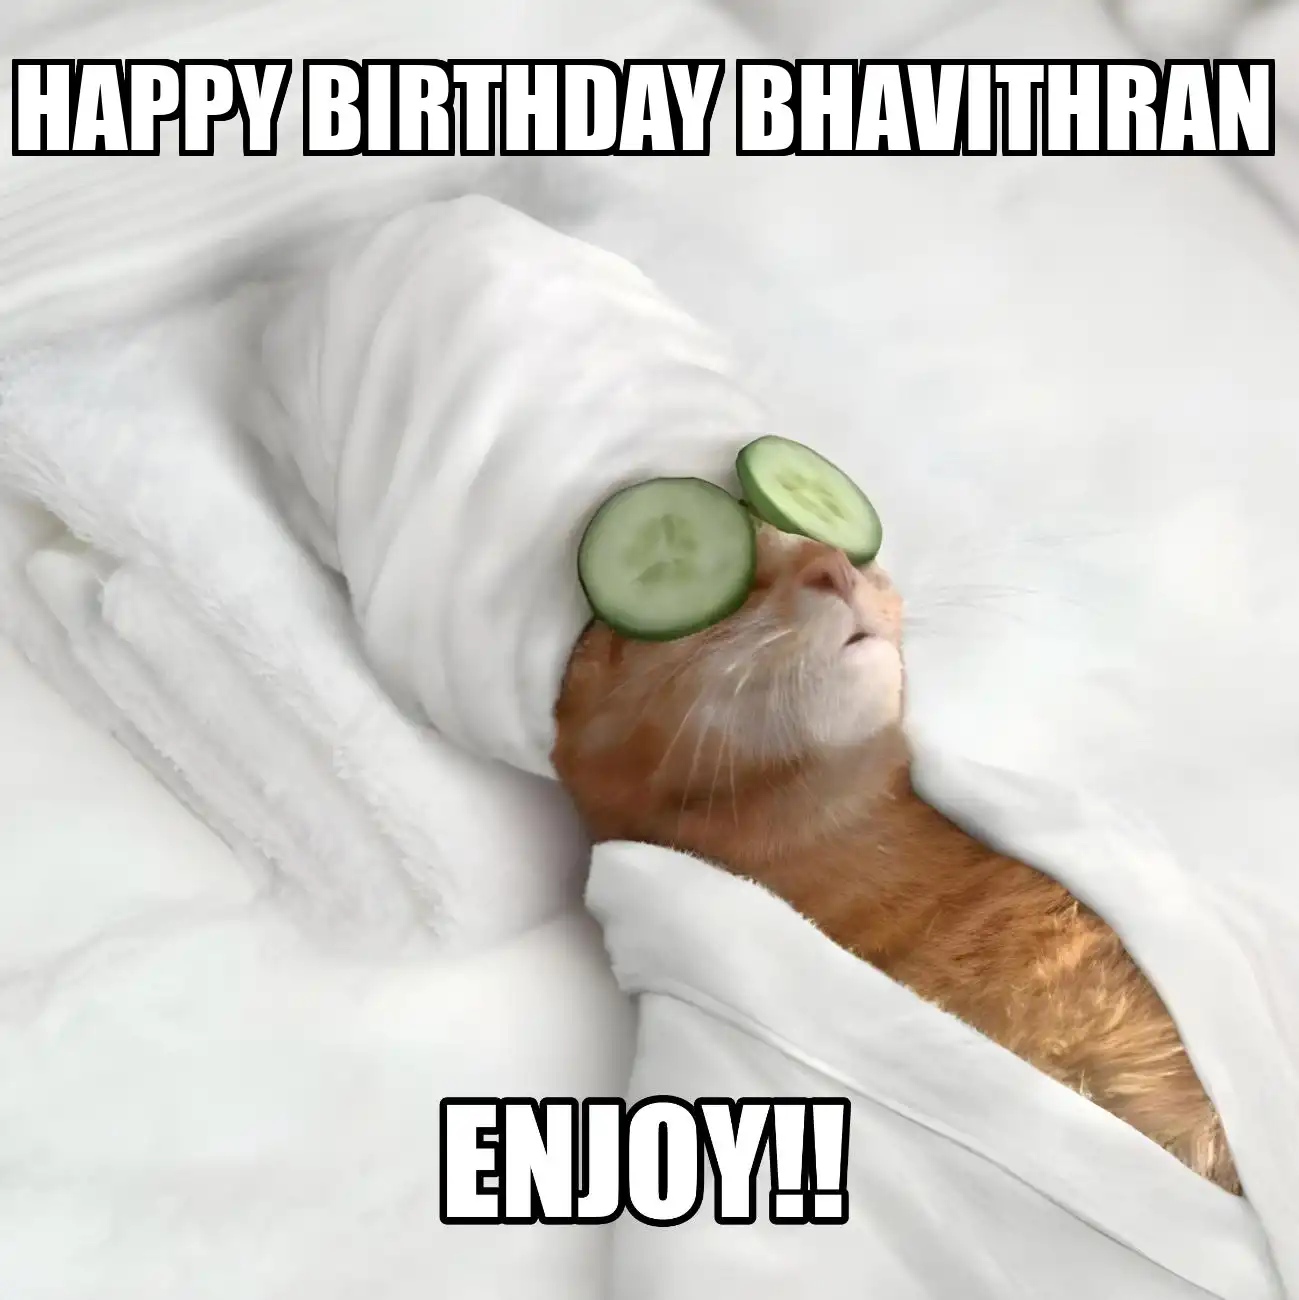 Happy Birthday Bhavithran Enjoy Cat Meme